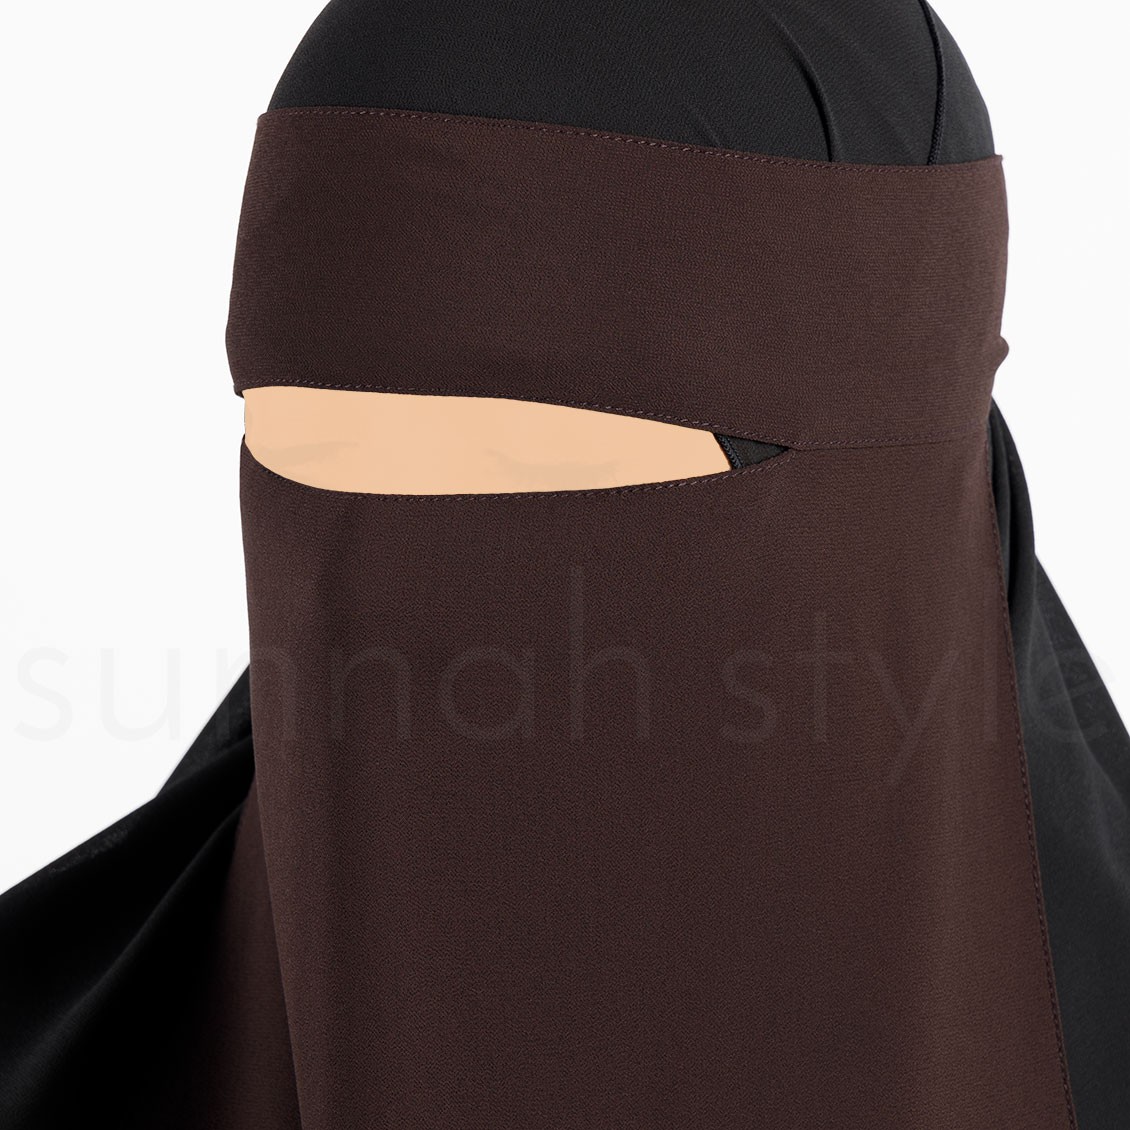 Sunnah Style Pebble One Layer Niqab Cedar